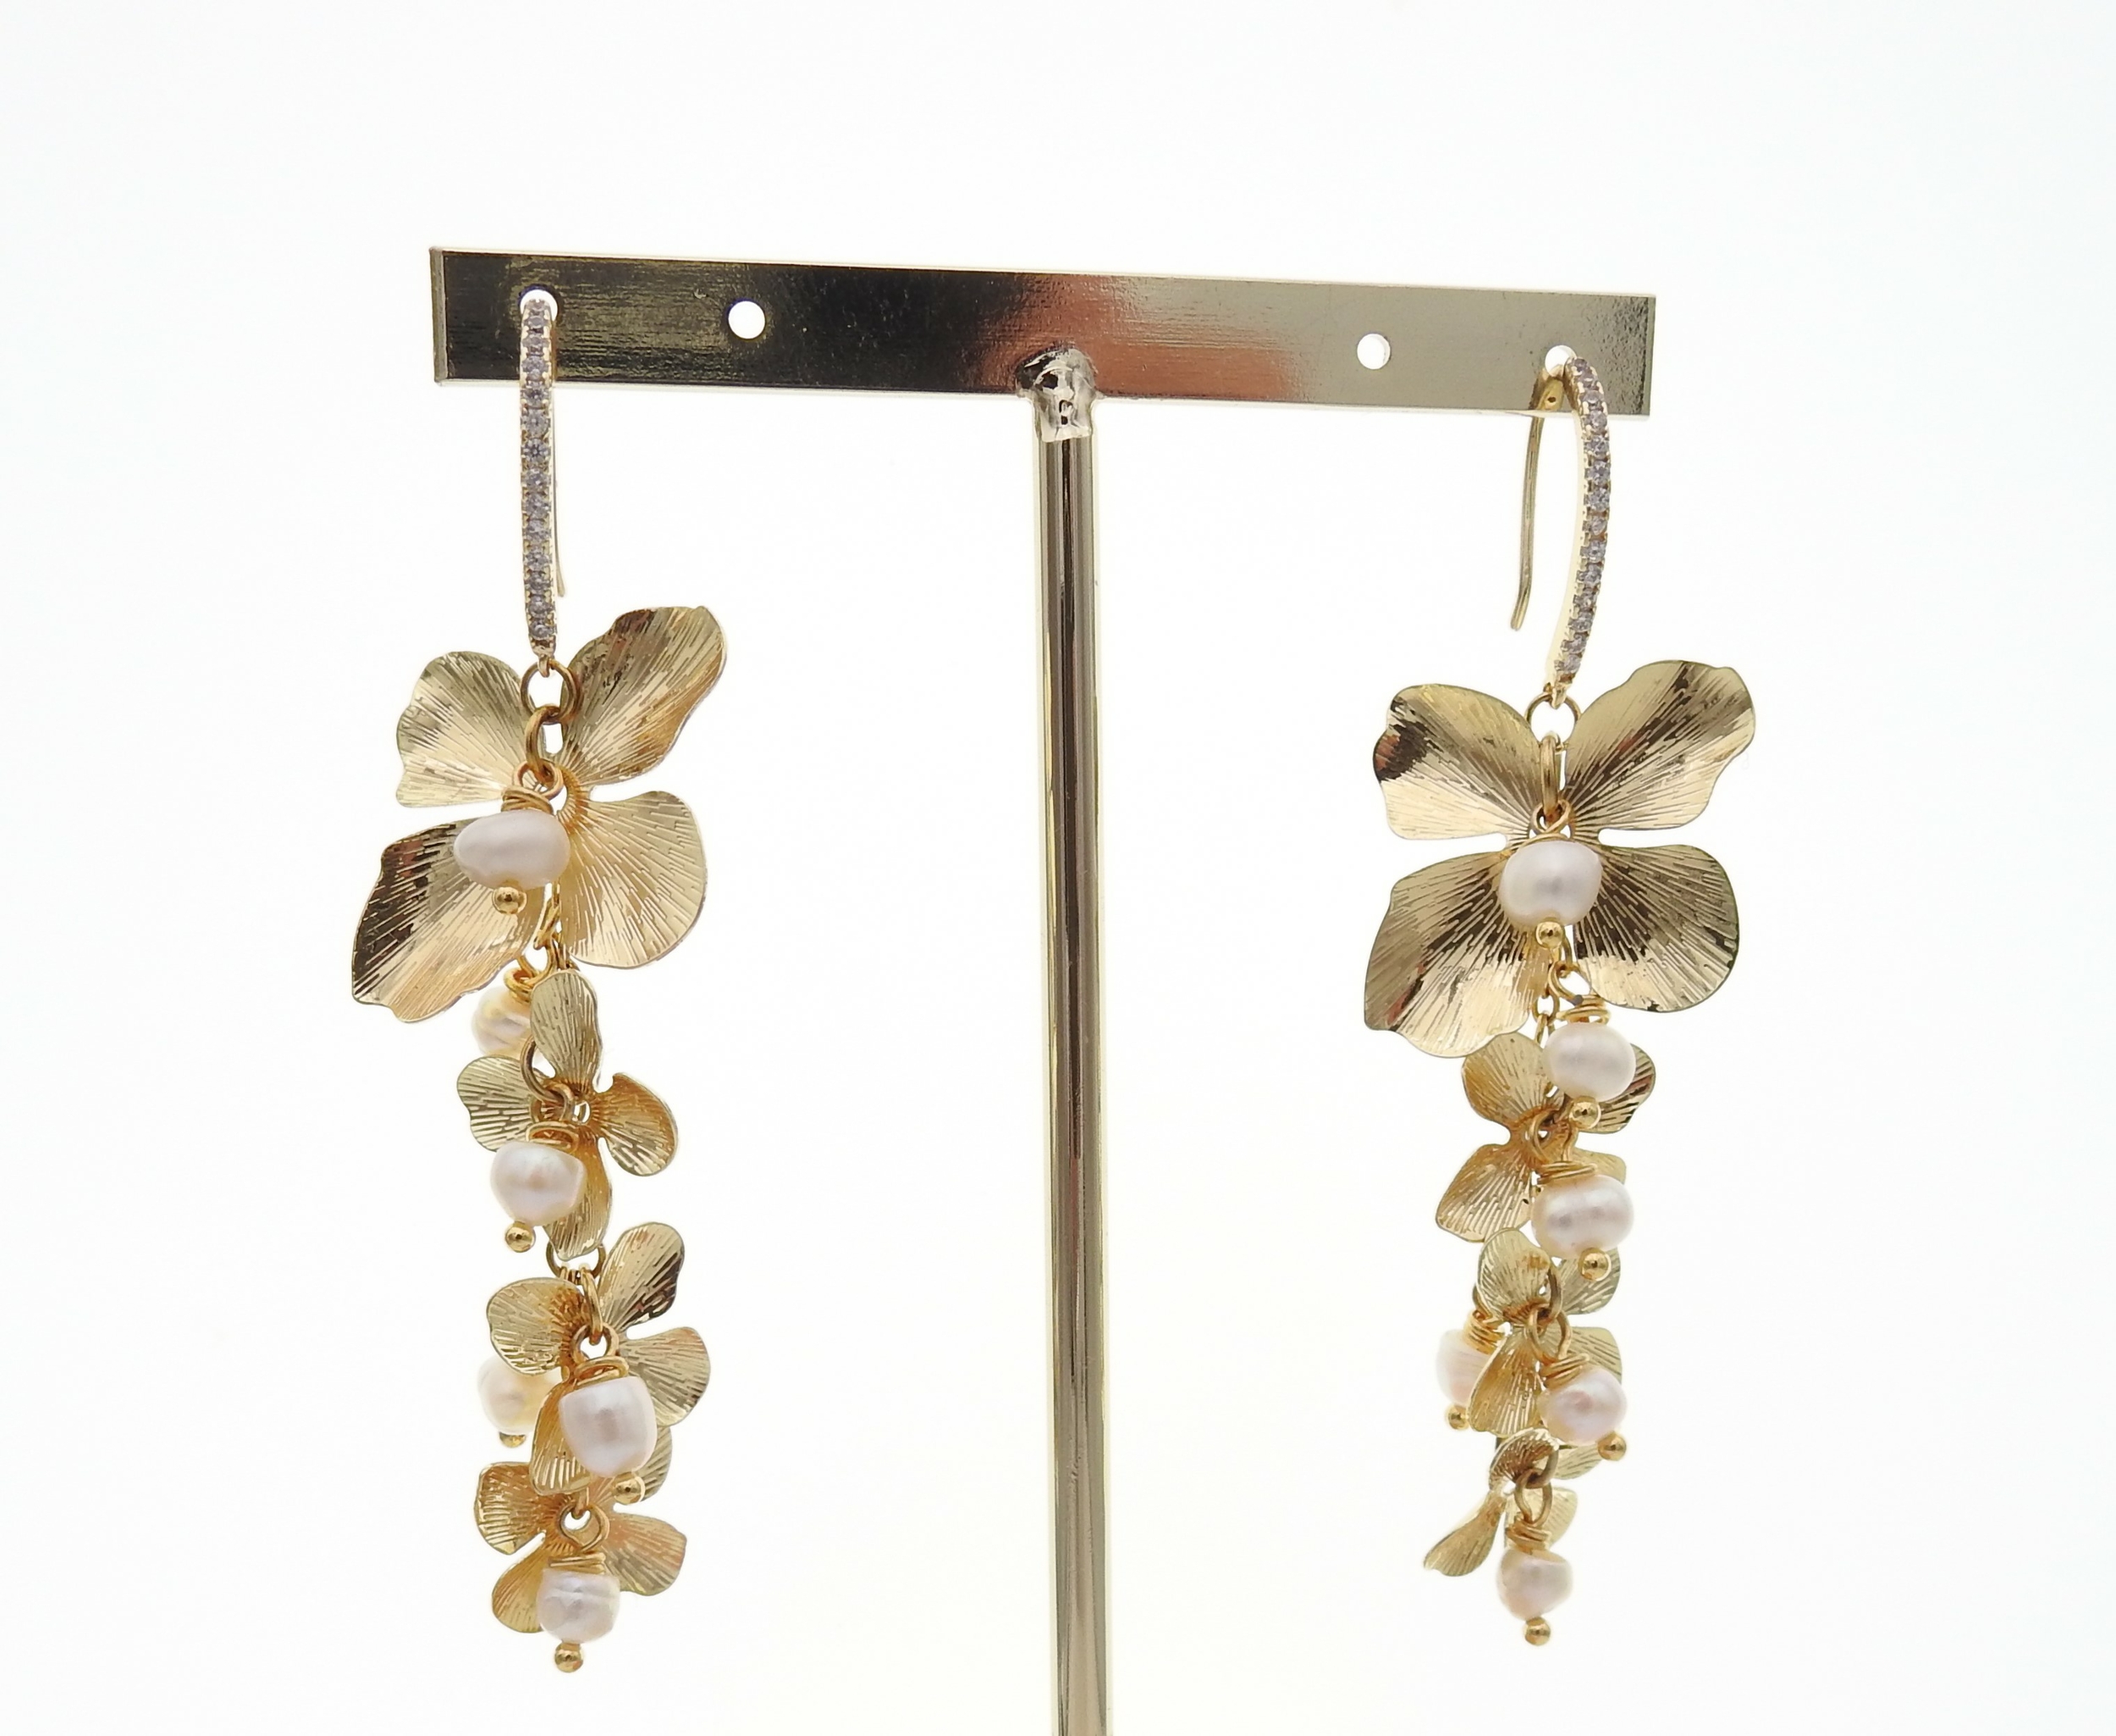 Boucles doreilles pendantes dorées ornées de perles deau douce | boucles doreilles dorées ANNA | MomZelle BIjoux MMC258